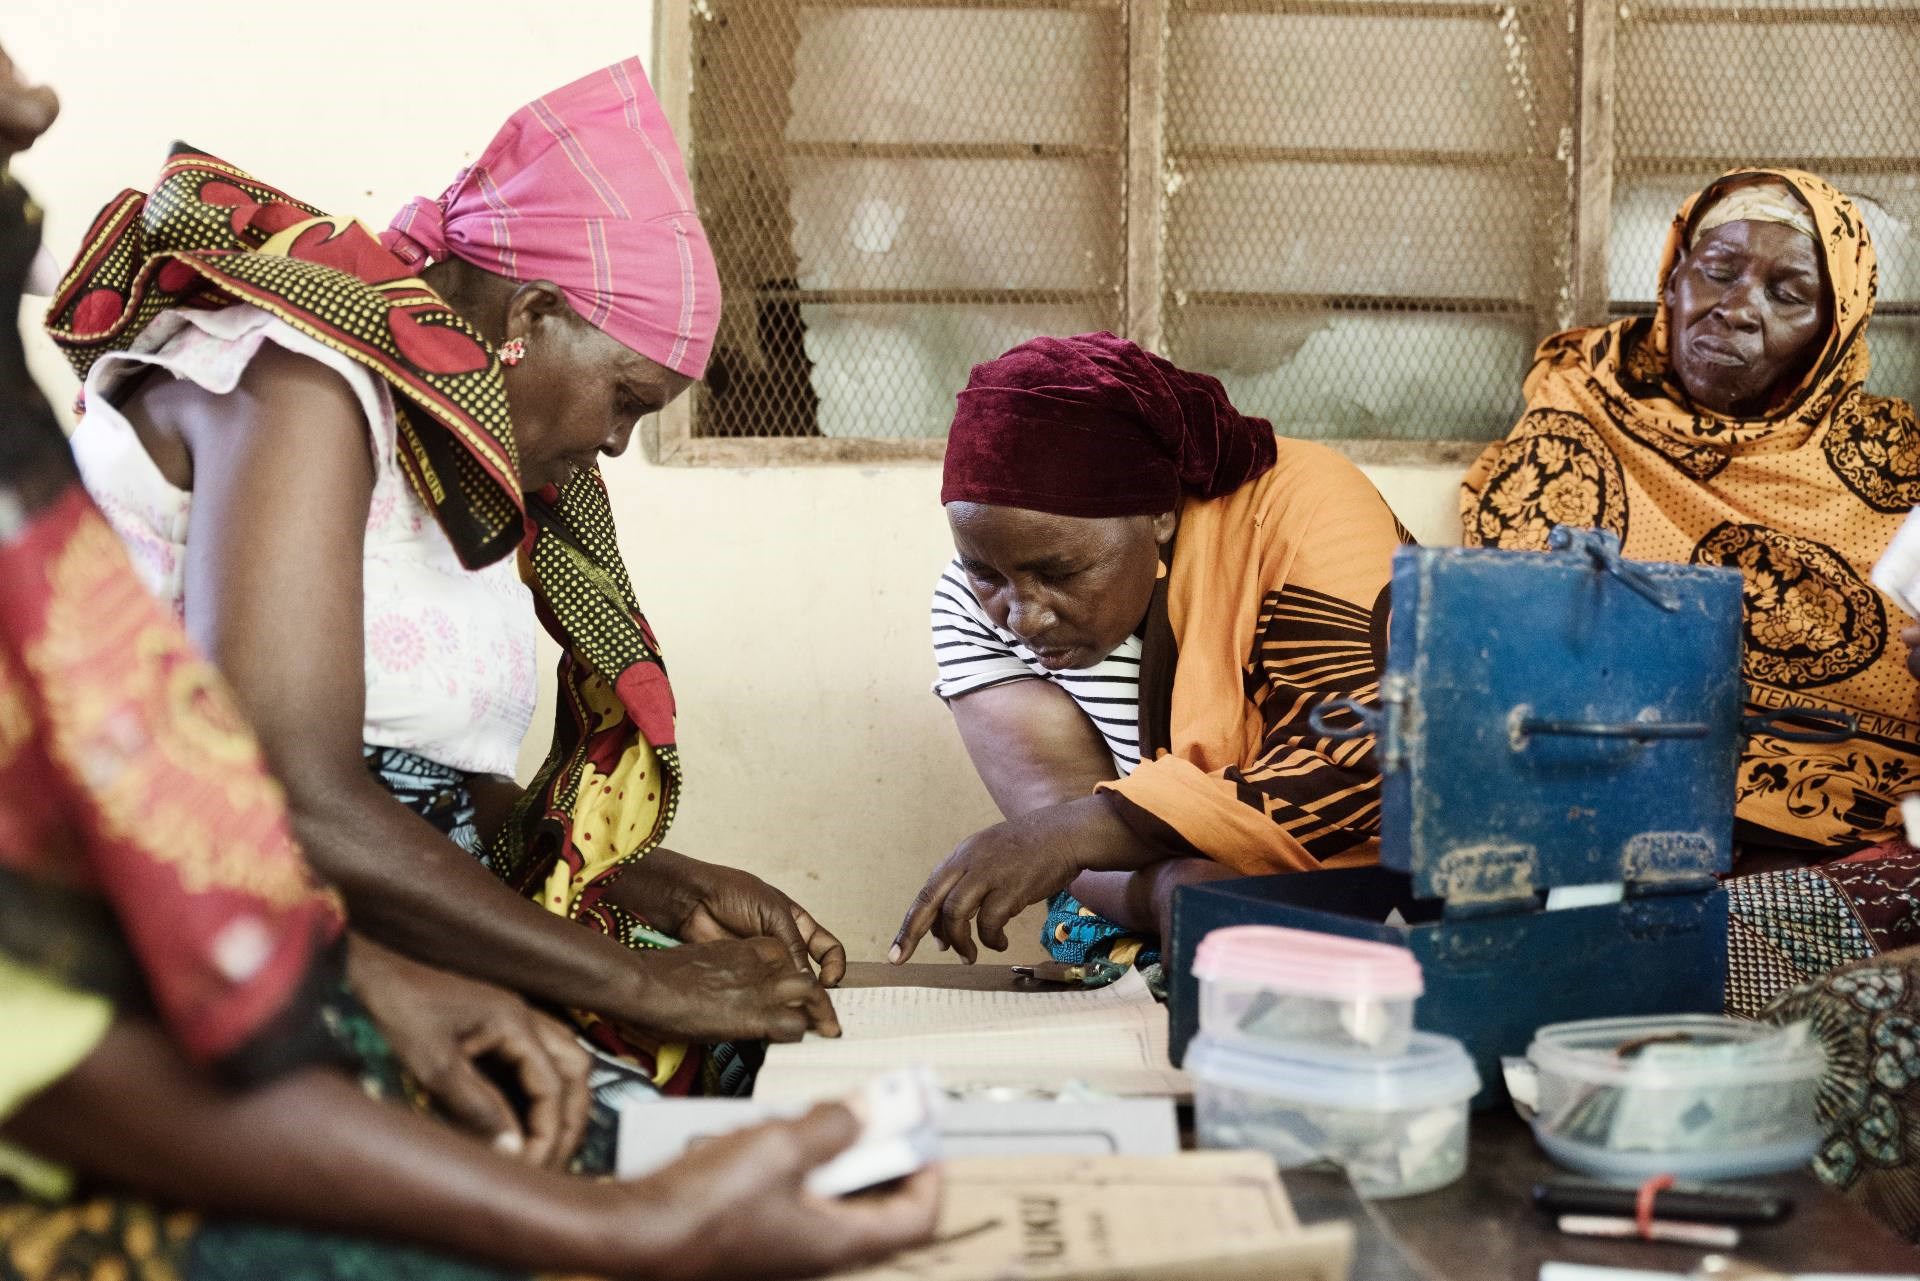 Spare-låne-grupper hjælper mennesker ud af fattigdom i Tanzania